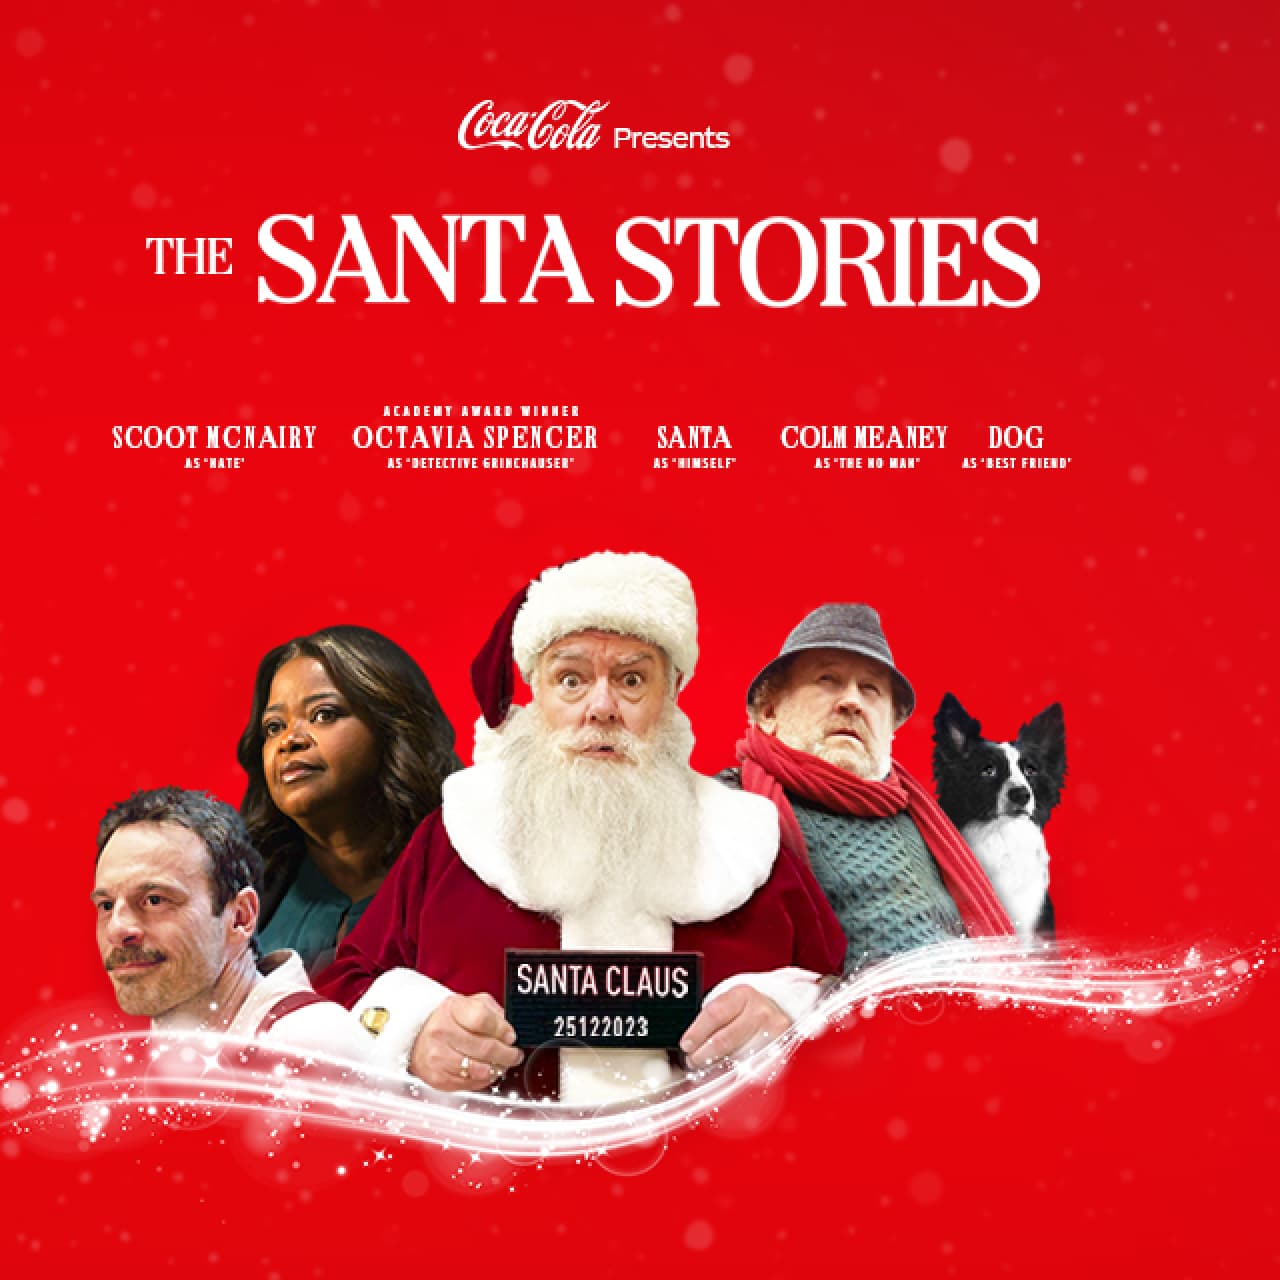 Coca-Cola presents The Santa Stories